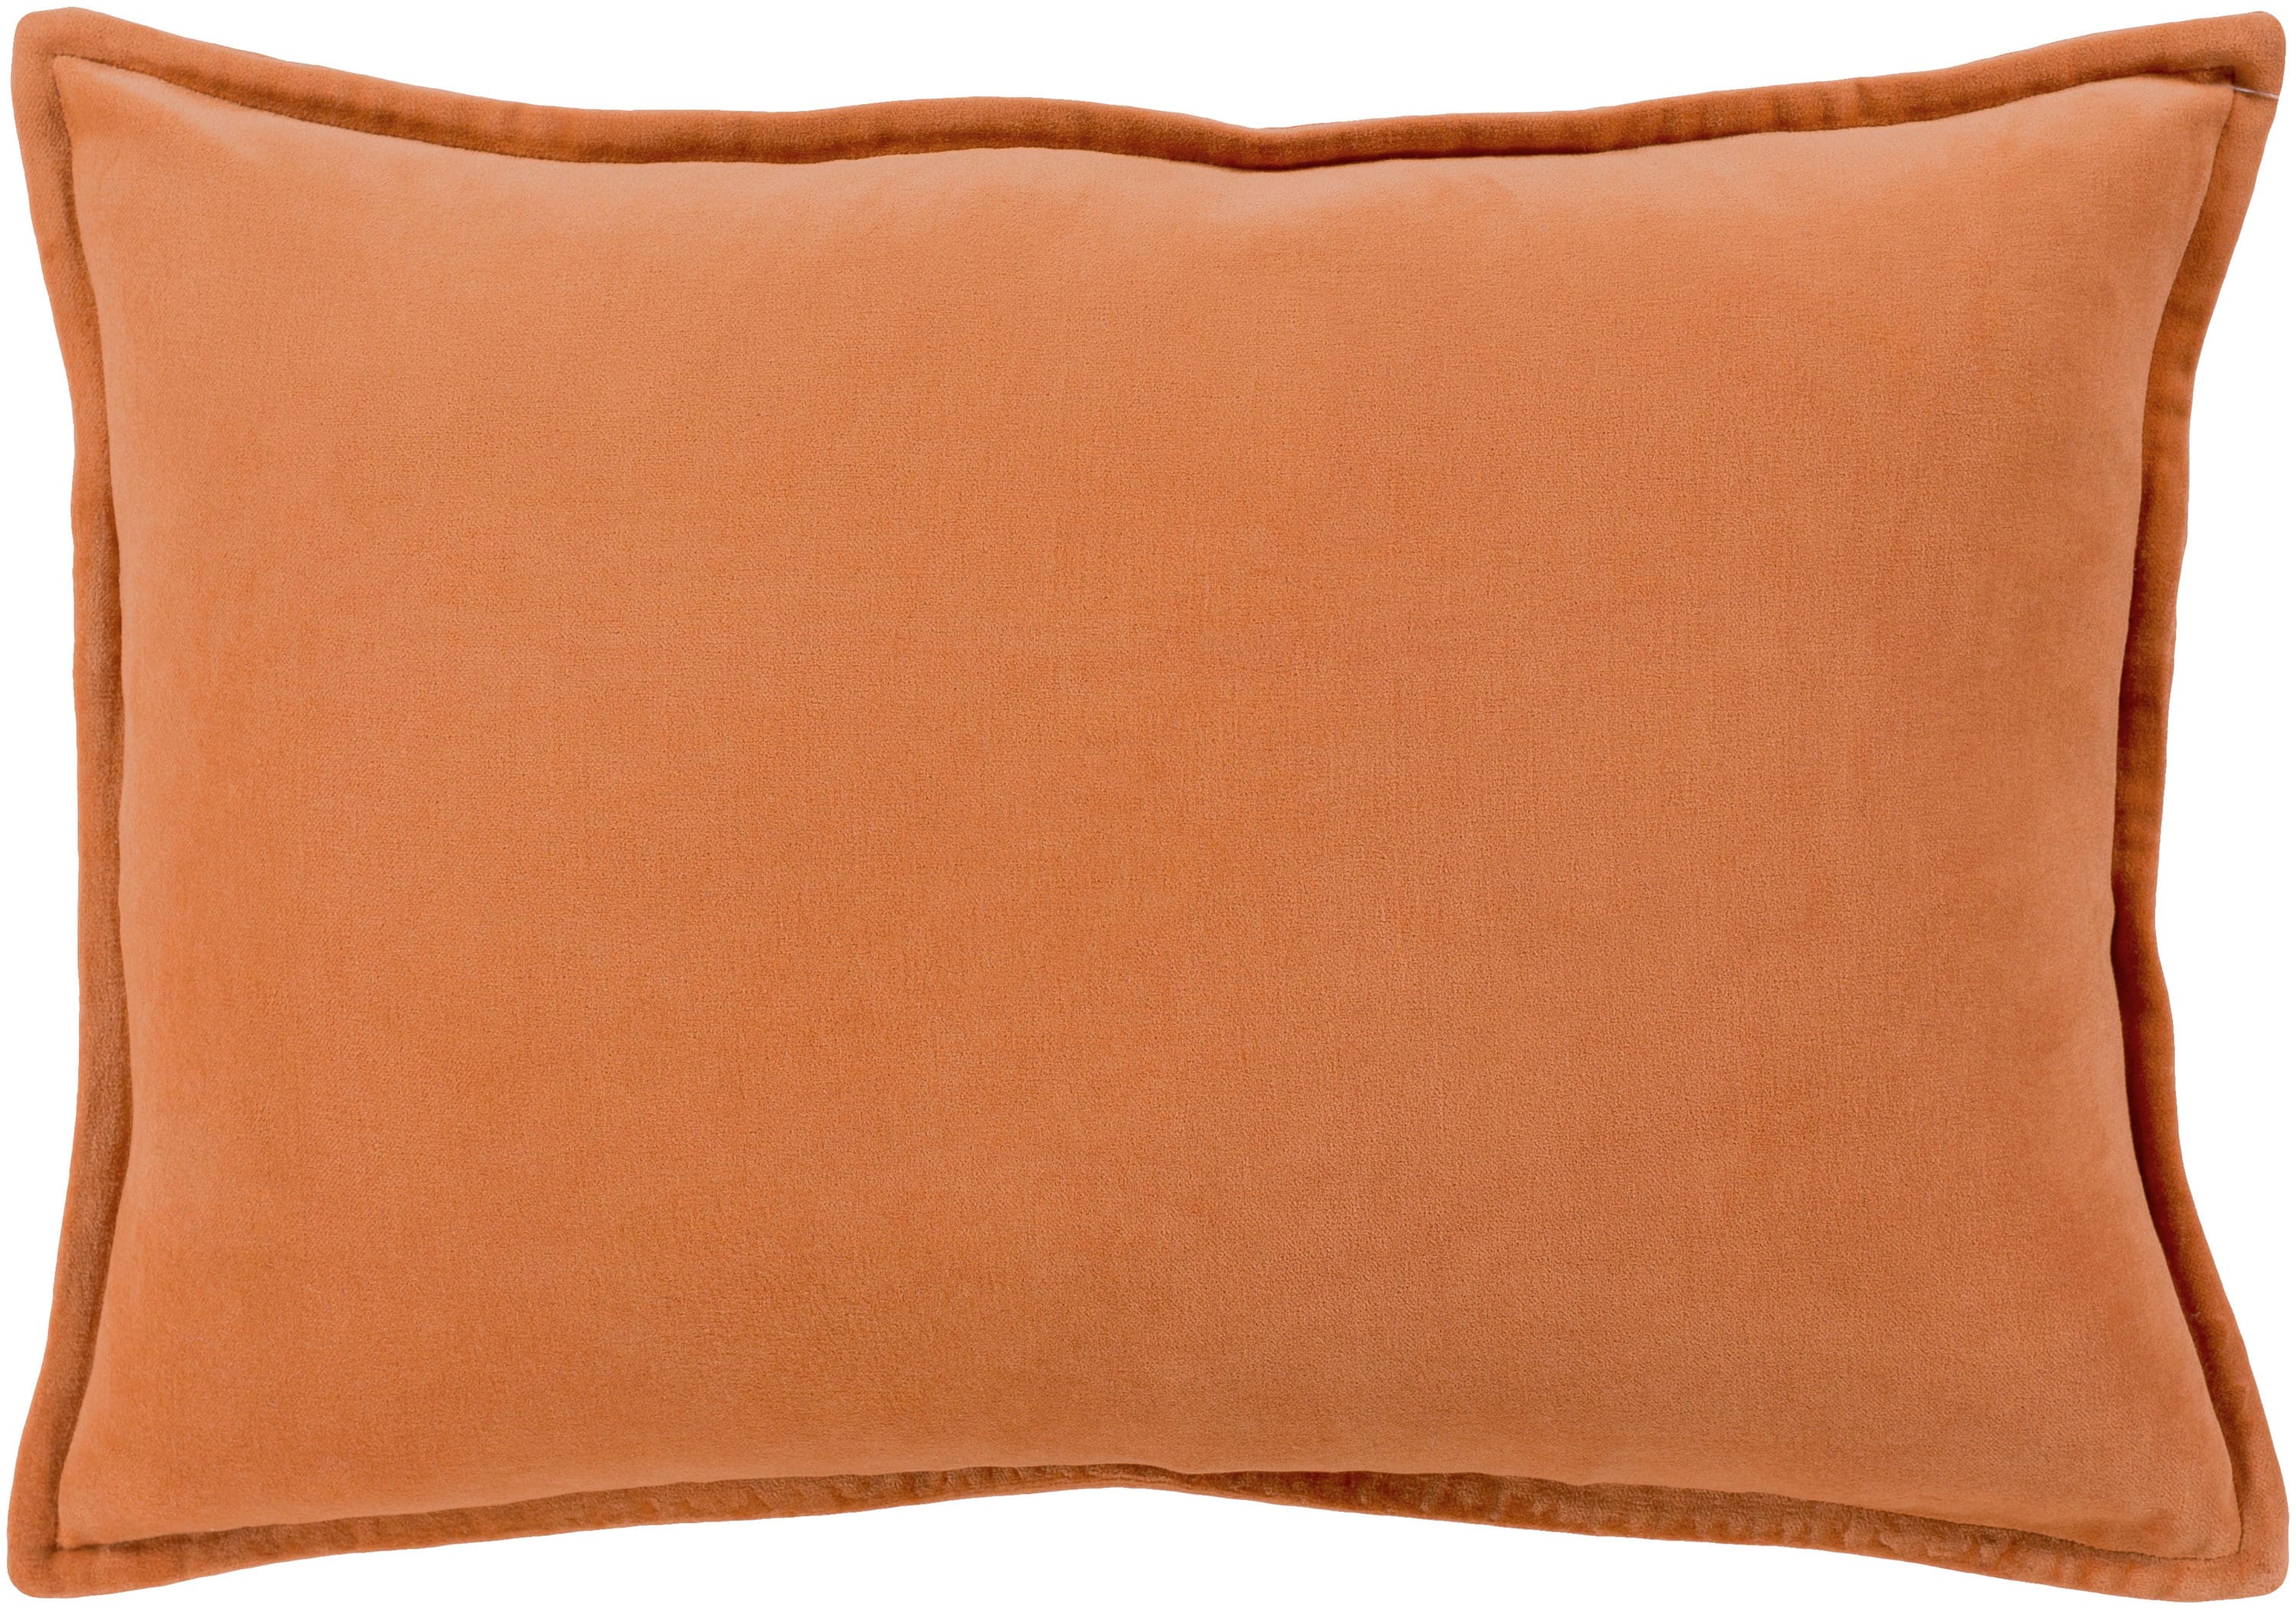 Safavieh Hello Pumpkin Pillow Orange, Size: 18 inch x 18 inch